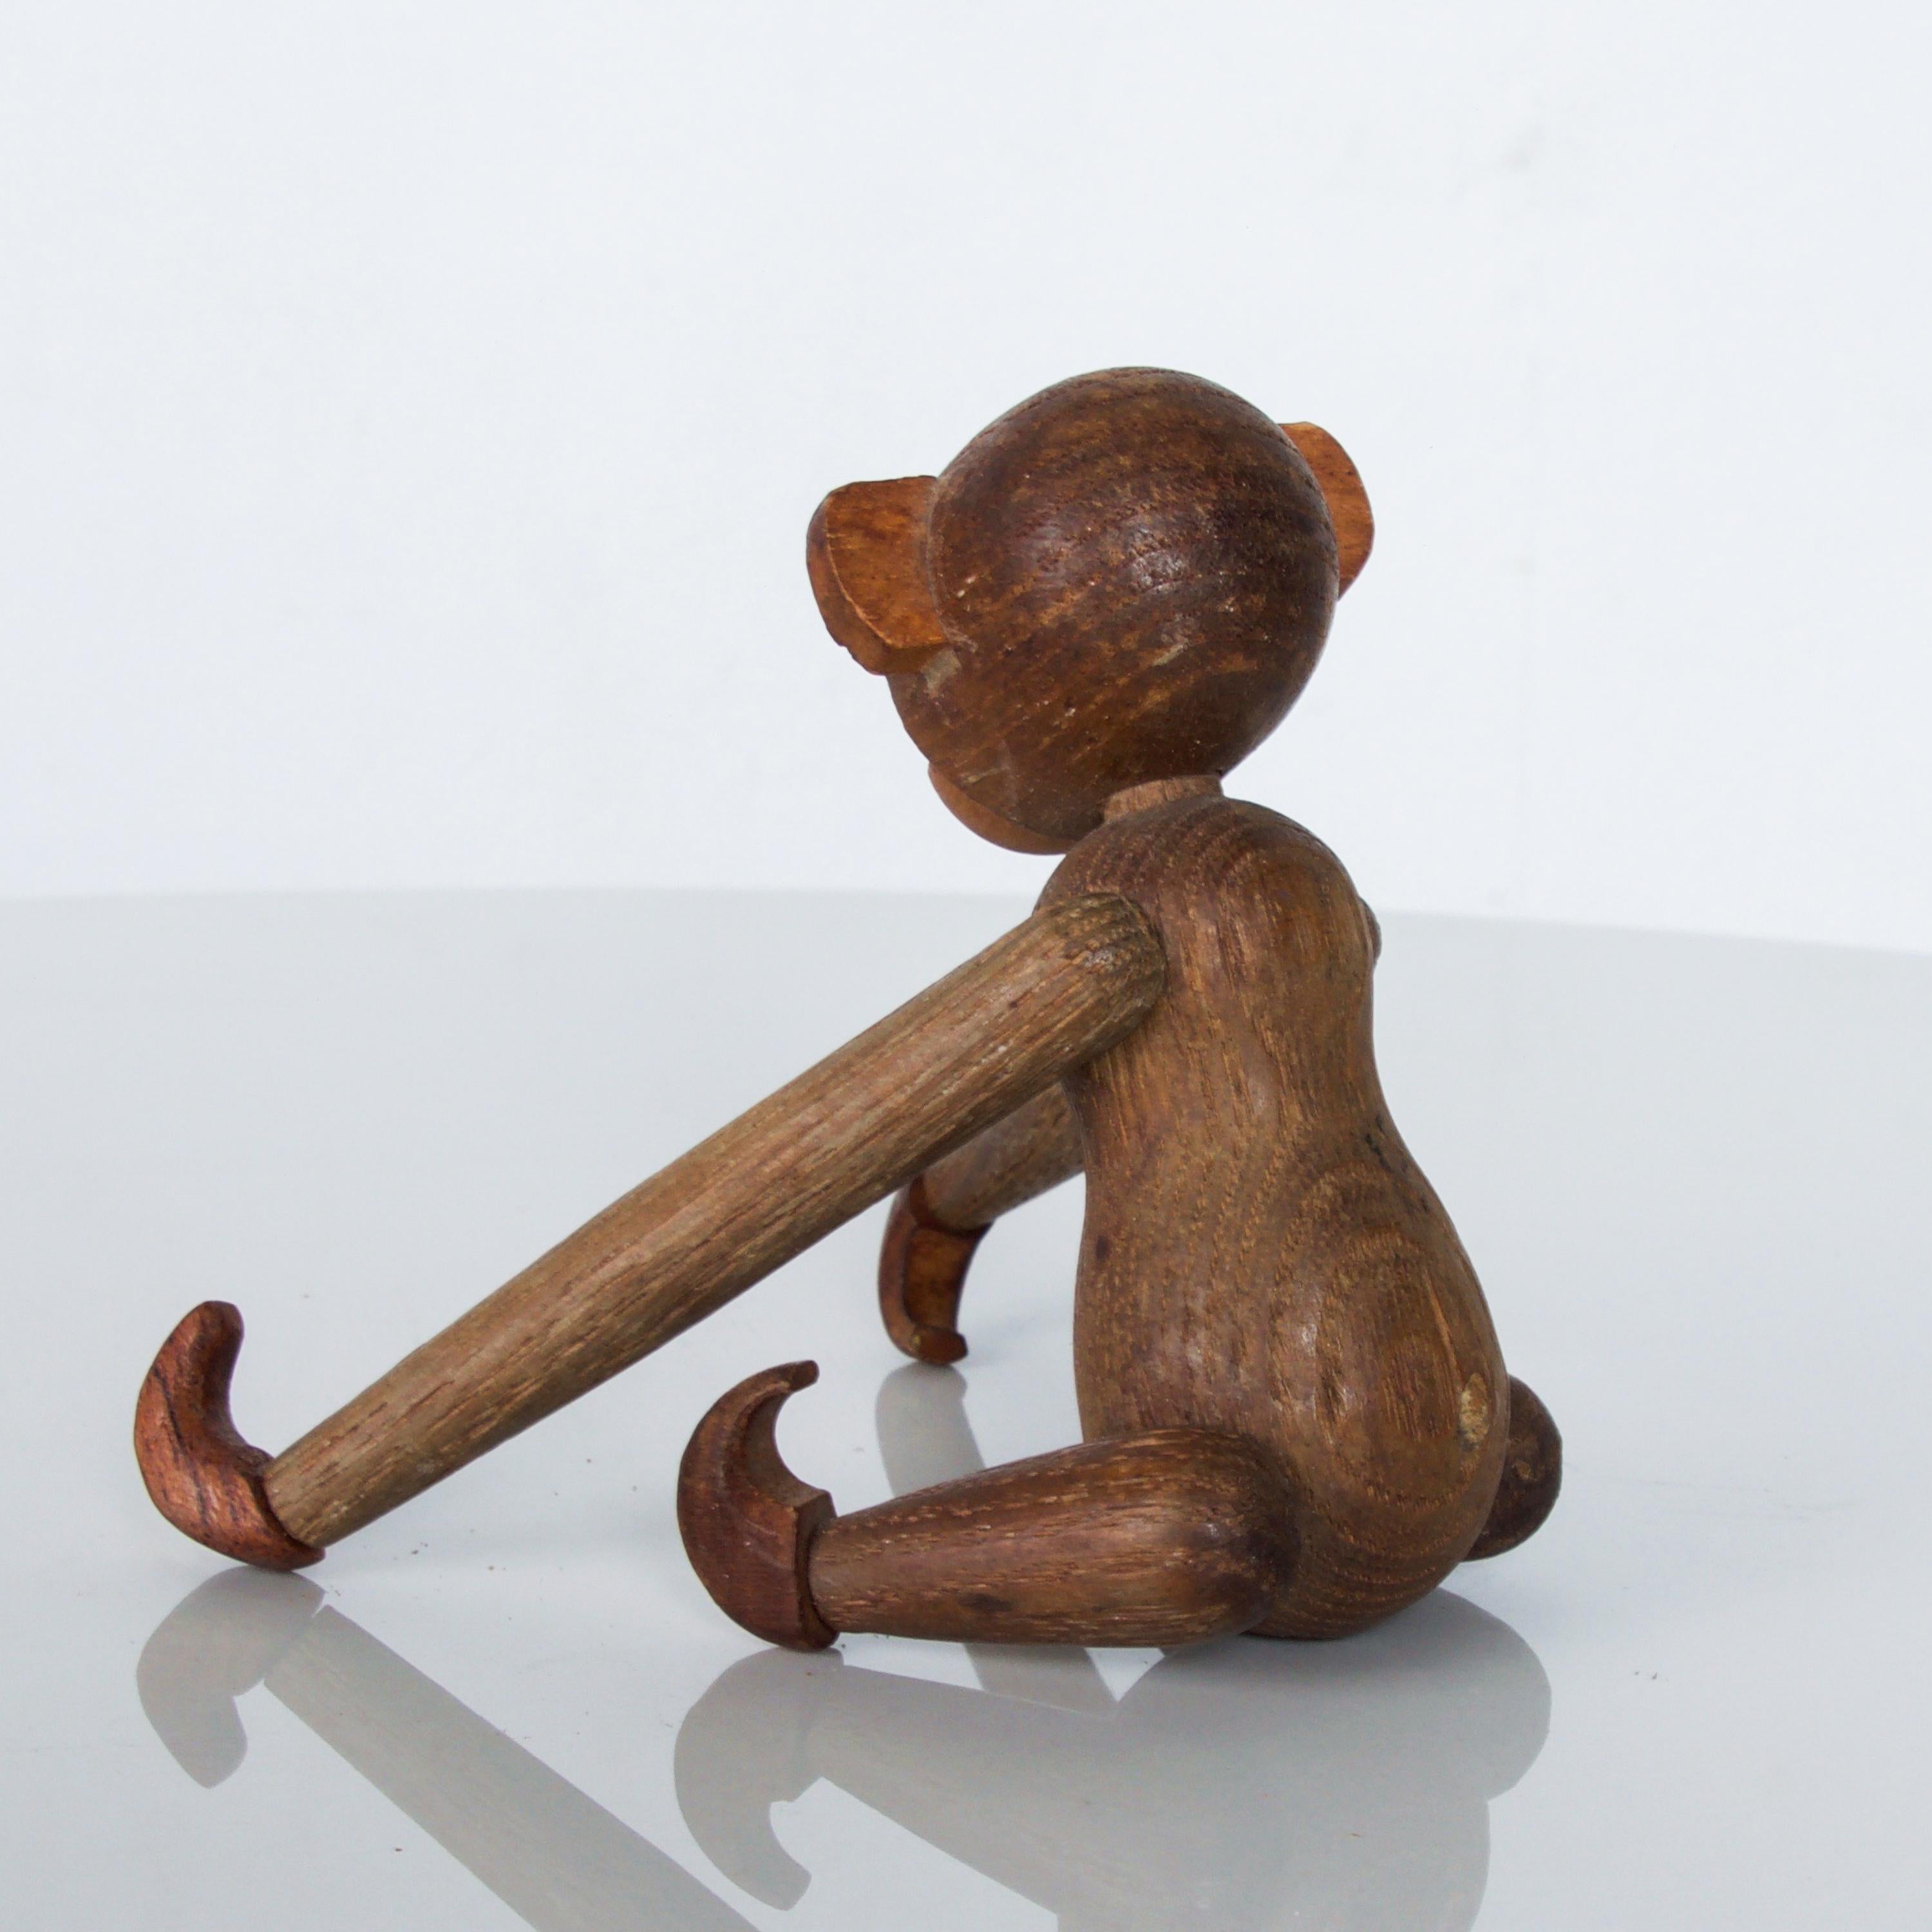 Japanese Kay Bojesen Danish Style Teak Wood Jointed Flexible Toy Baby Monkey 1960s Japan